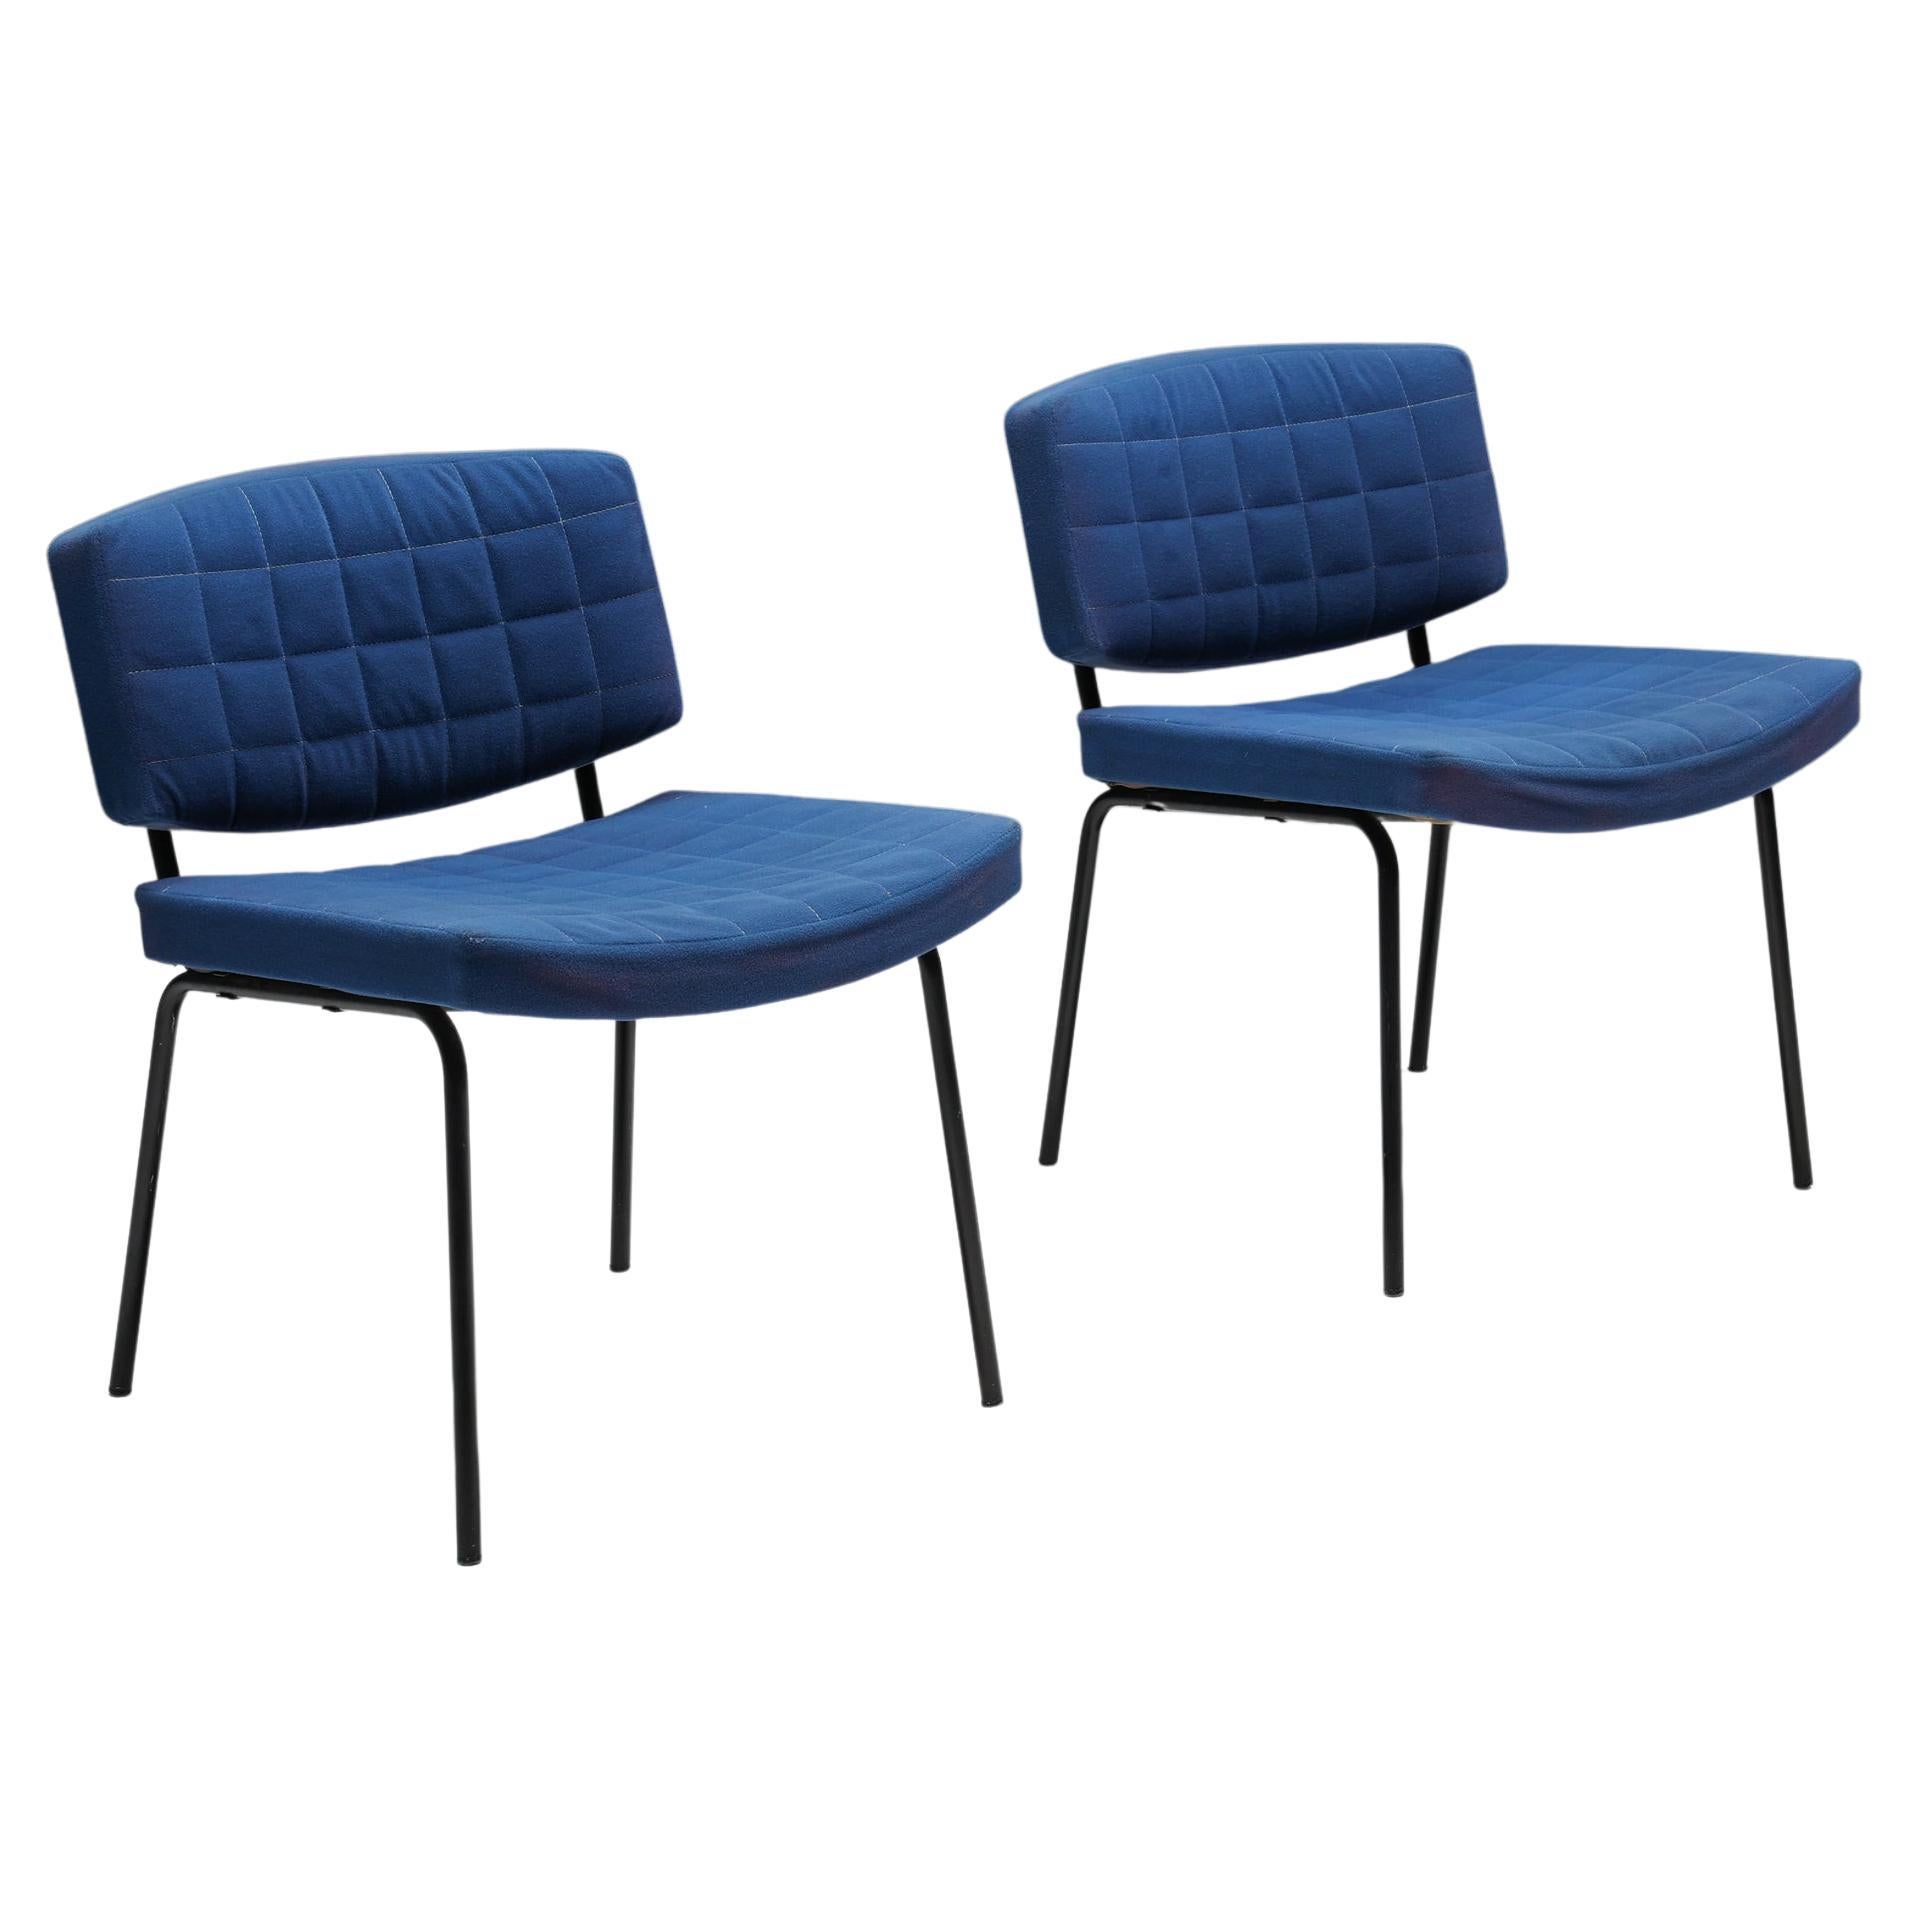 Stühle aus blauem Stoff und Metallgestell, 1980er-Jahre